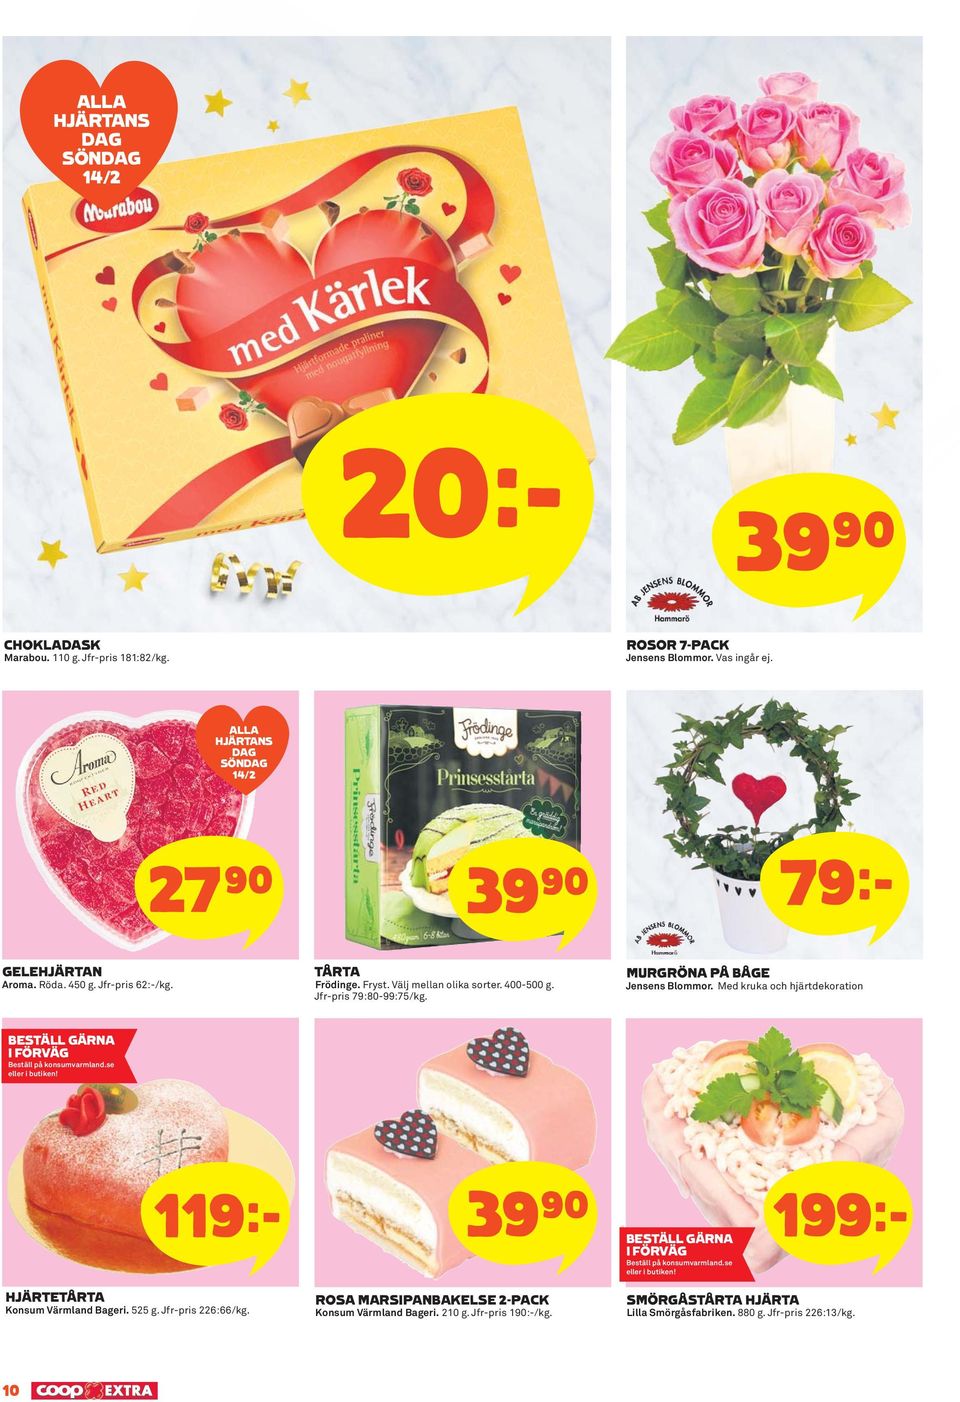 MURGRÖNA PÅ BÅGE Jensens Blommor. Med kruka och hjärtdekoration BESTÄLL GÄRNA I FÖRVÄG Beställ på konsumvarmland.se eller i butiken!